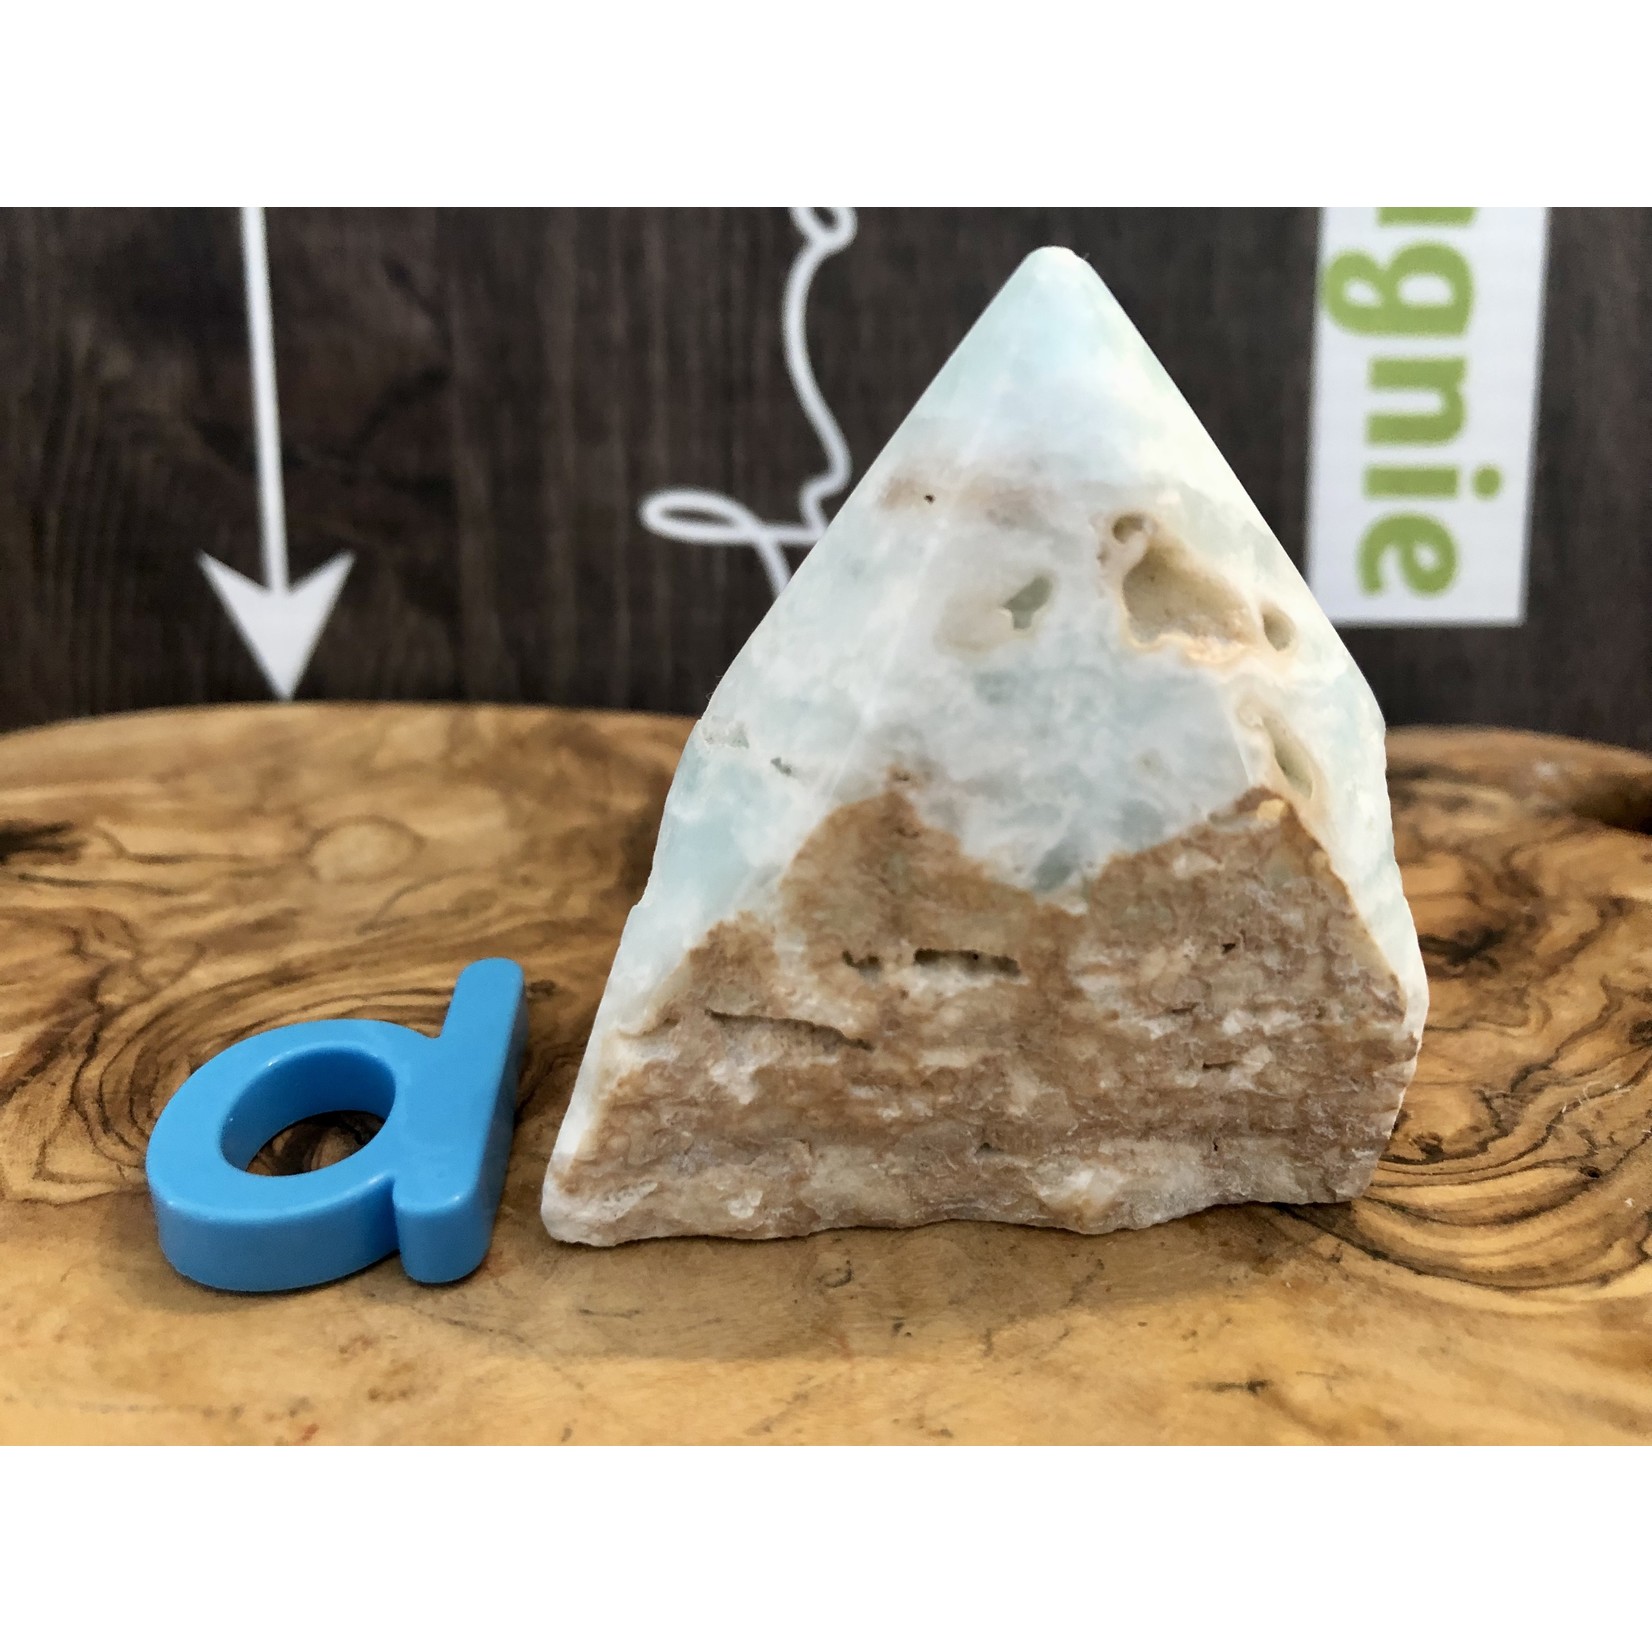 Pyramide de calcite des Caraïbes - Dessus poli, guérison des blessures et des émotions